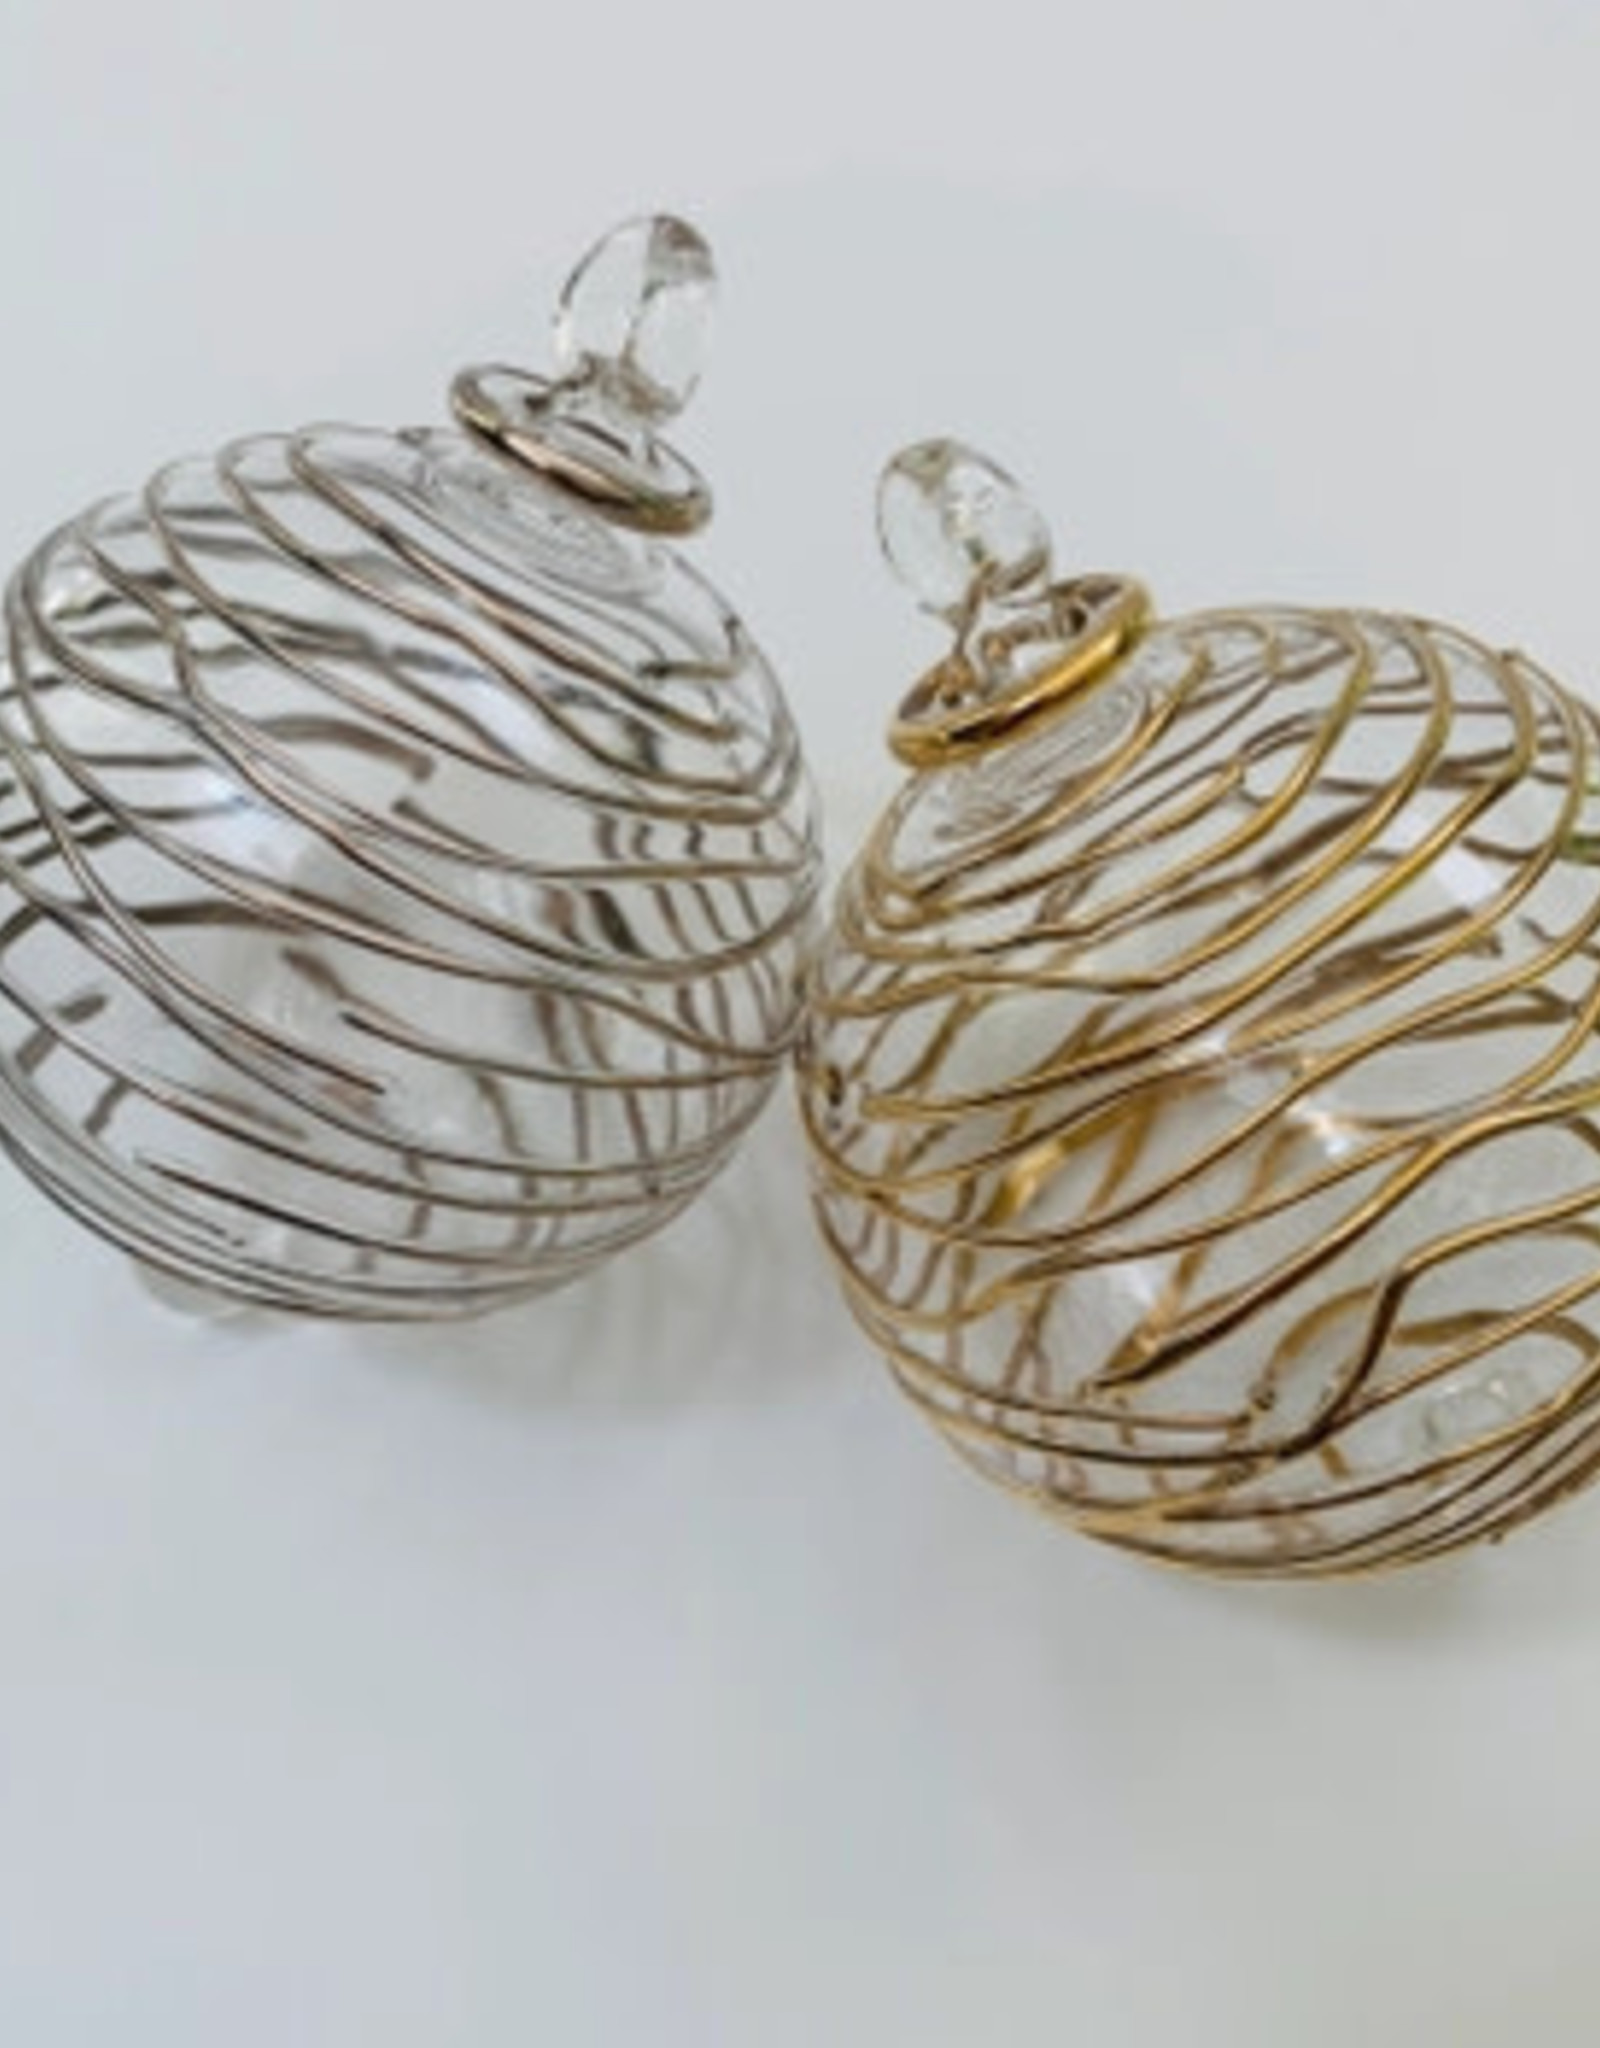 Dandarah Blown Glass Ornament - Silver Spiral